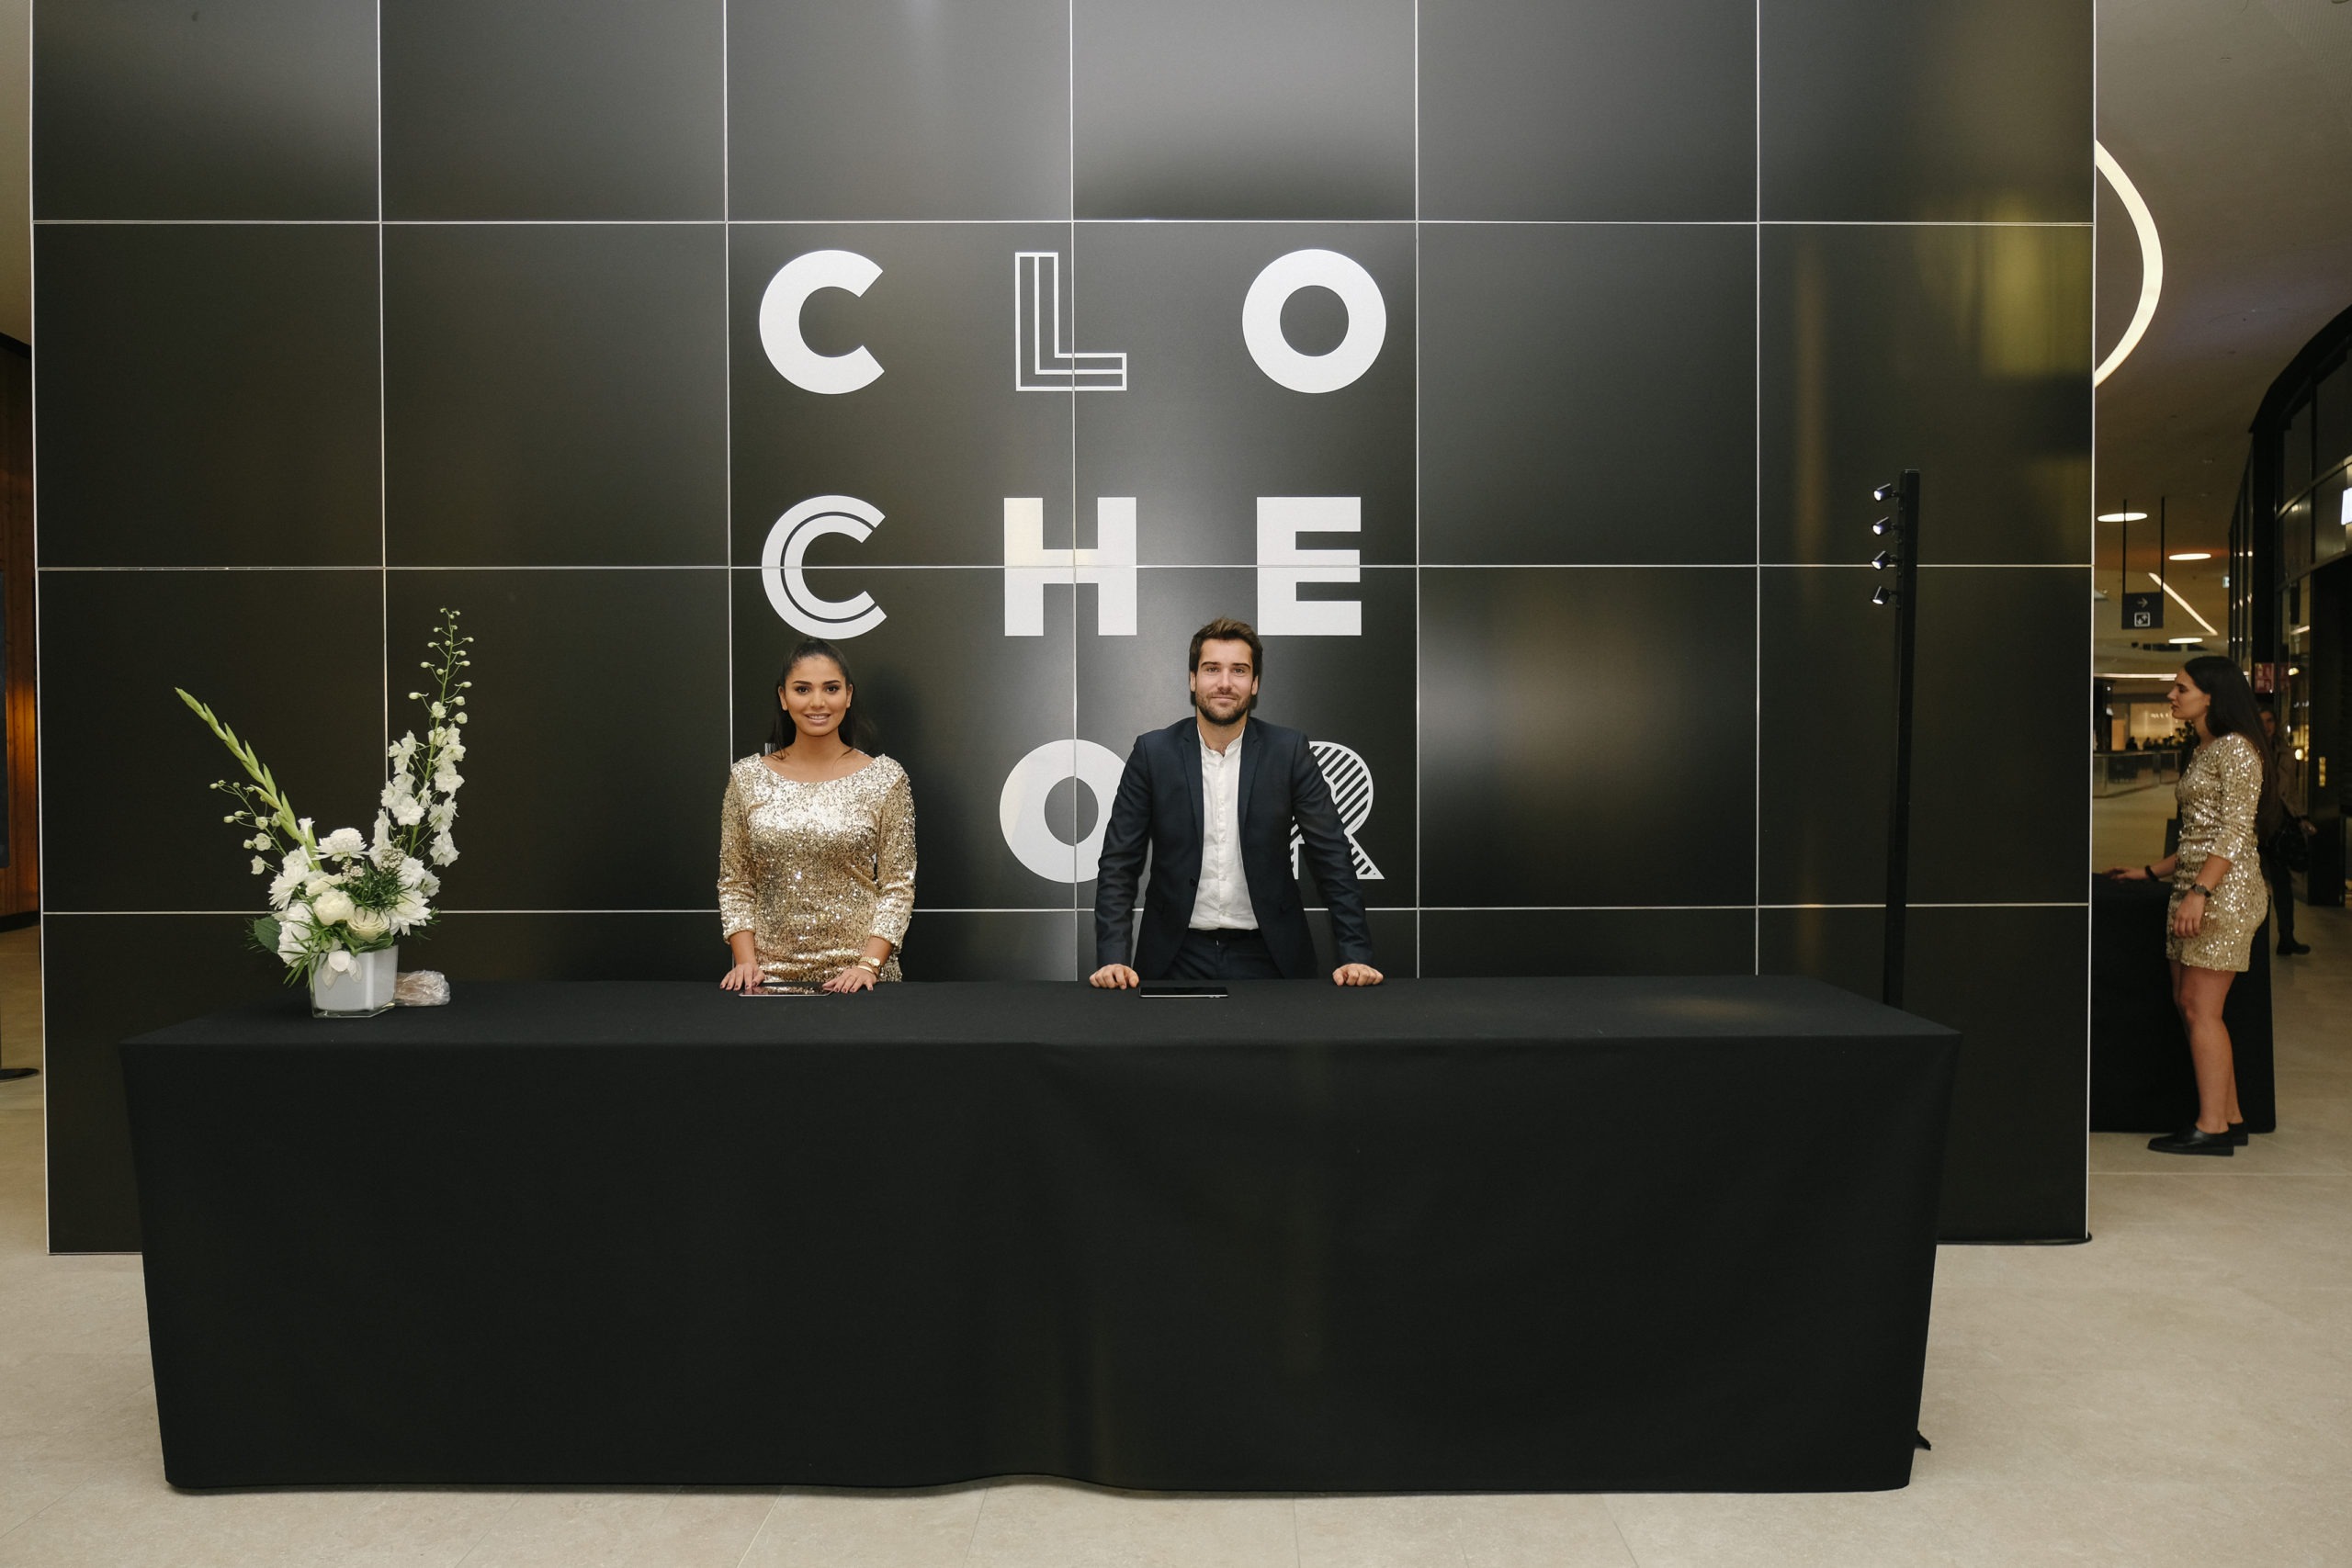 Shine a light agence évènementielle luxembourg - créateur d'expériences immersives - Inauguration Cloche d'Or